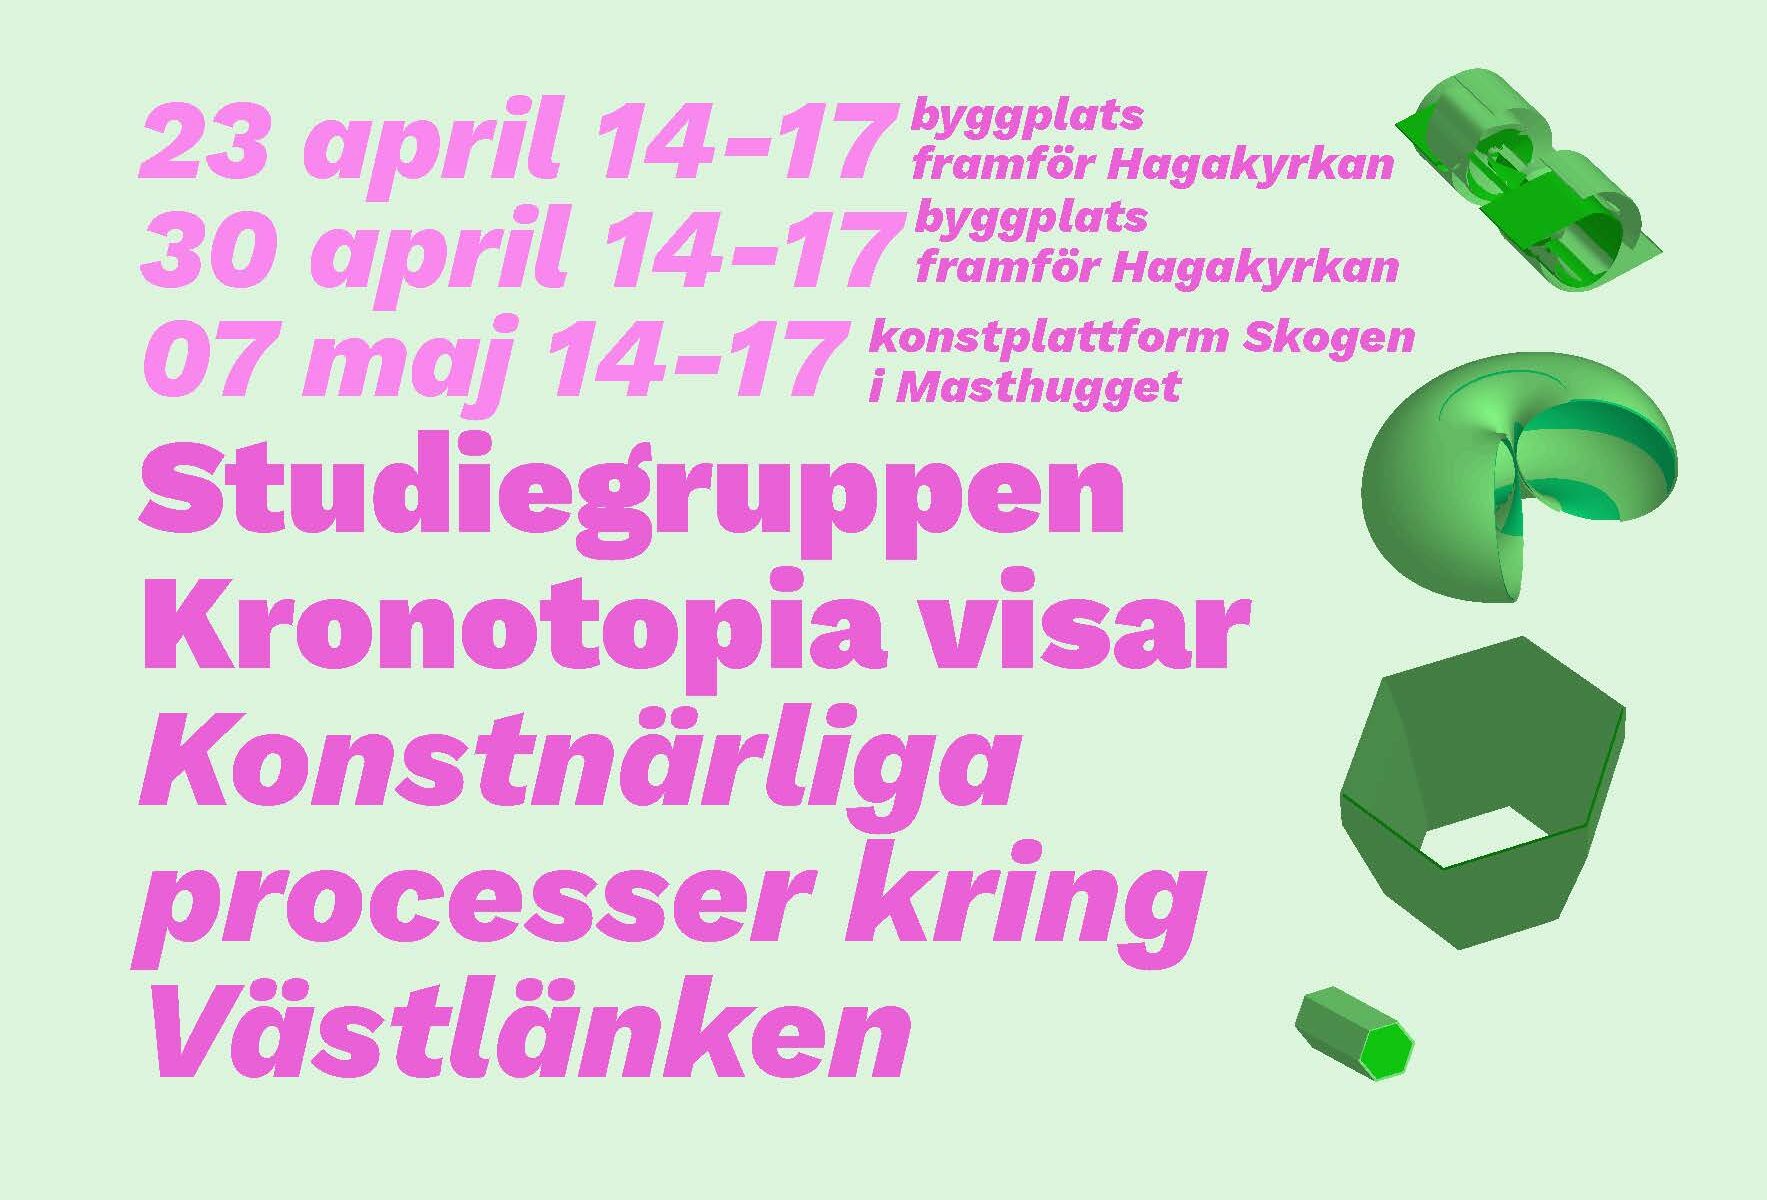 Bilden visar en flyer med texten: Studiegruppen Kronotopia visar konstnärliga processer kring Västlänken.